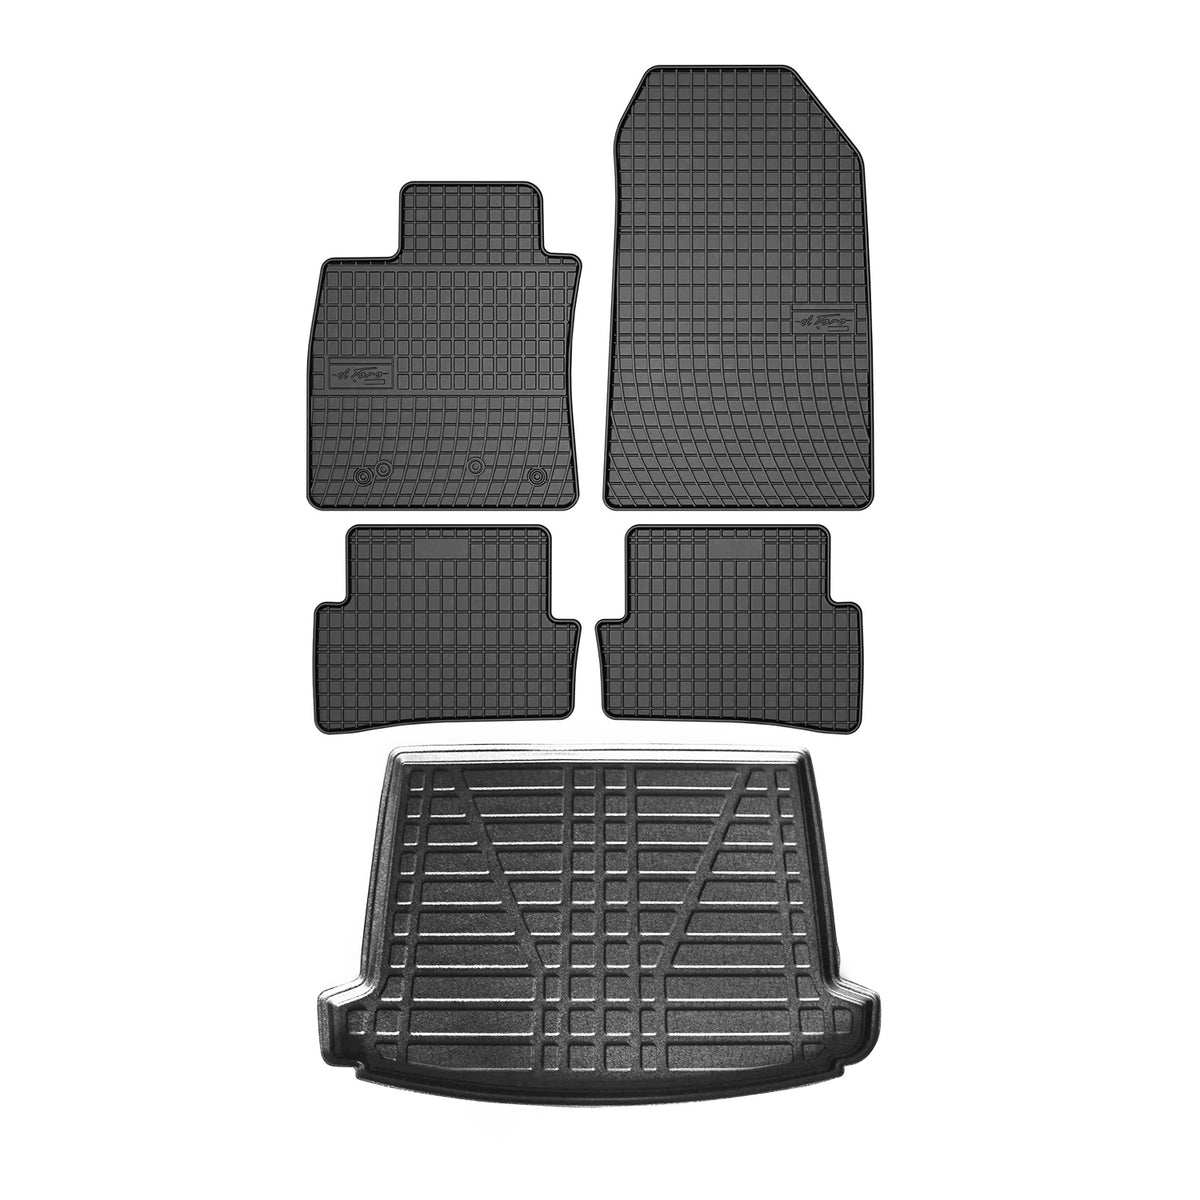 Fußmatten & Kofferraumwanne Set für Renault Clio 2012-2019 Untere Gummi 5x